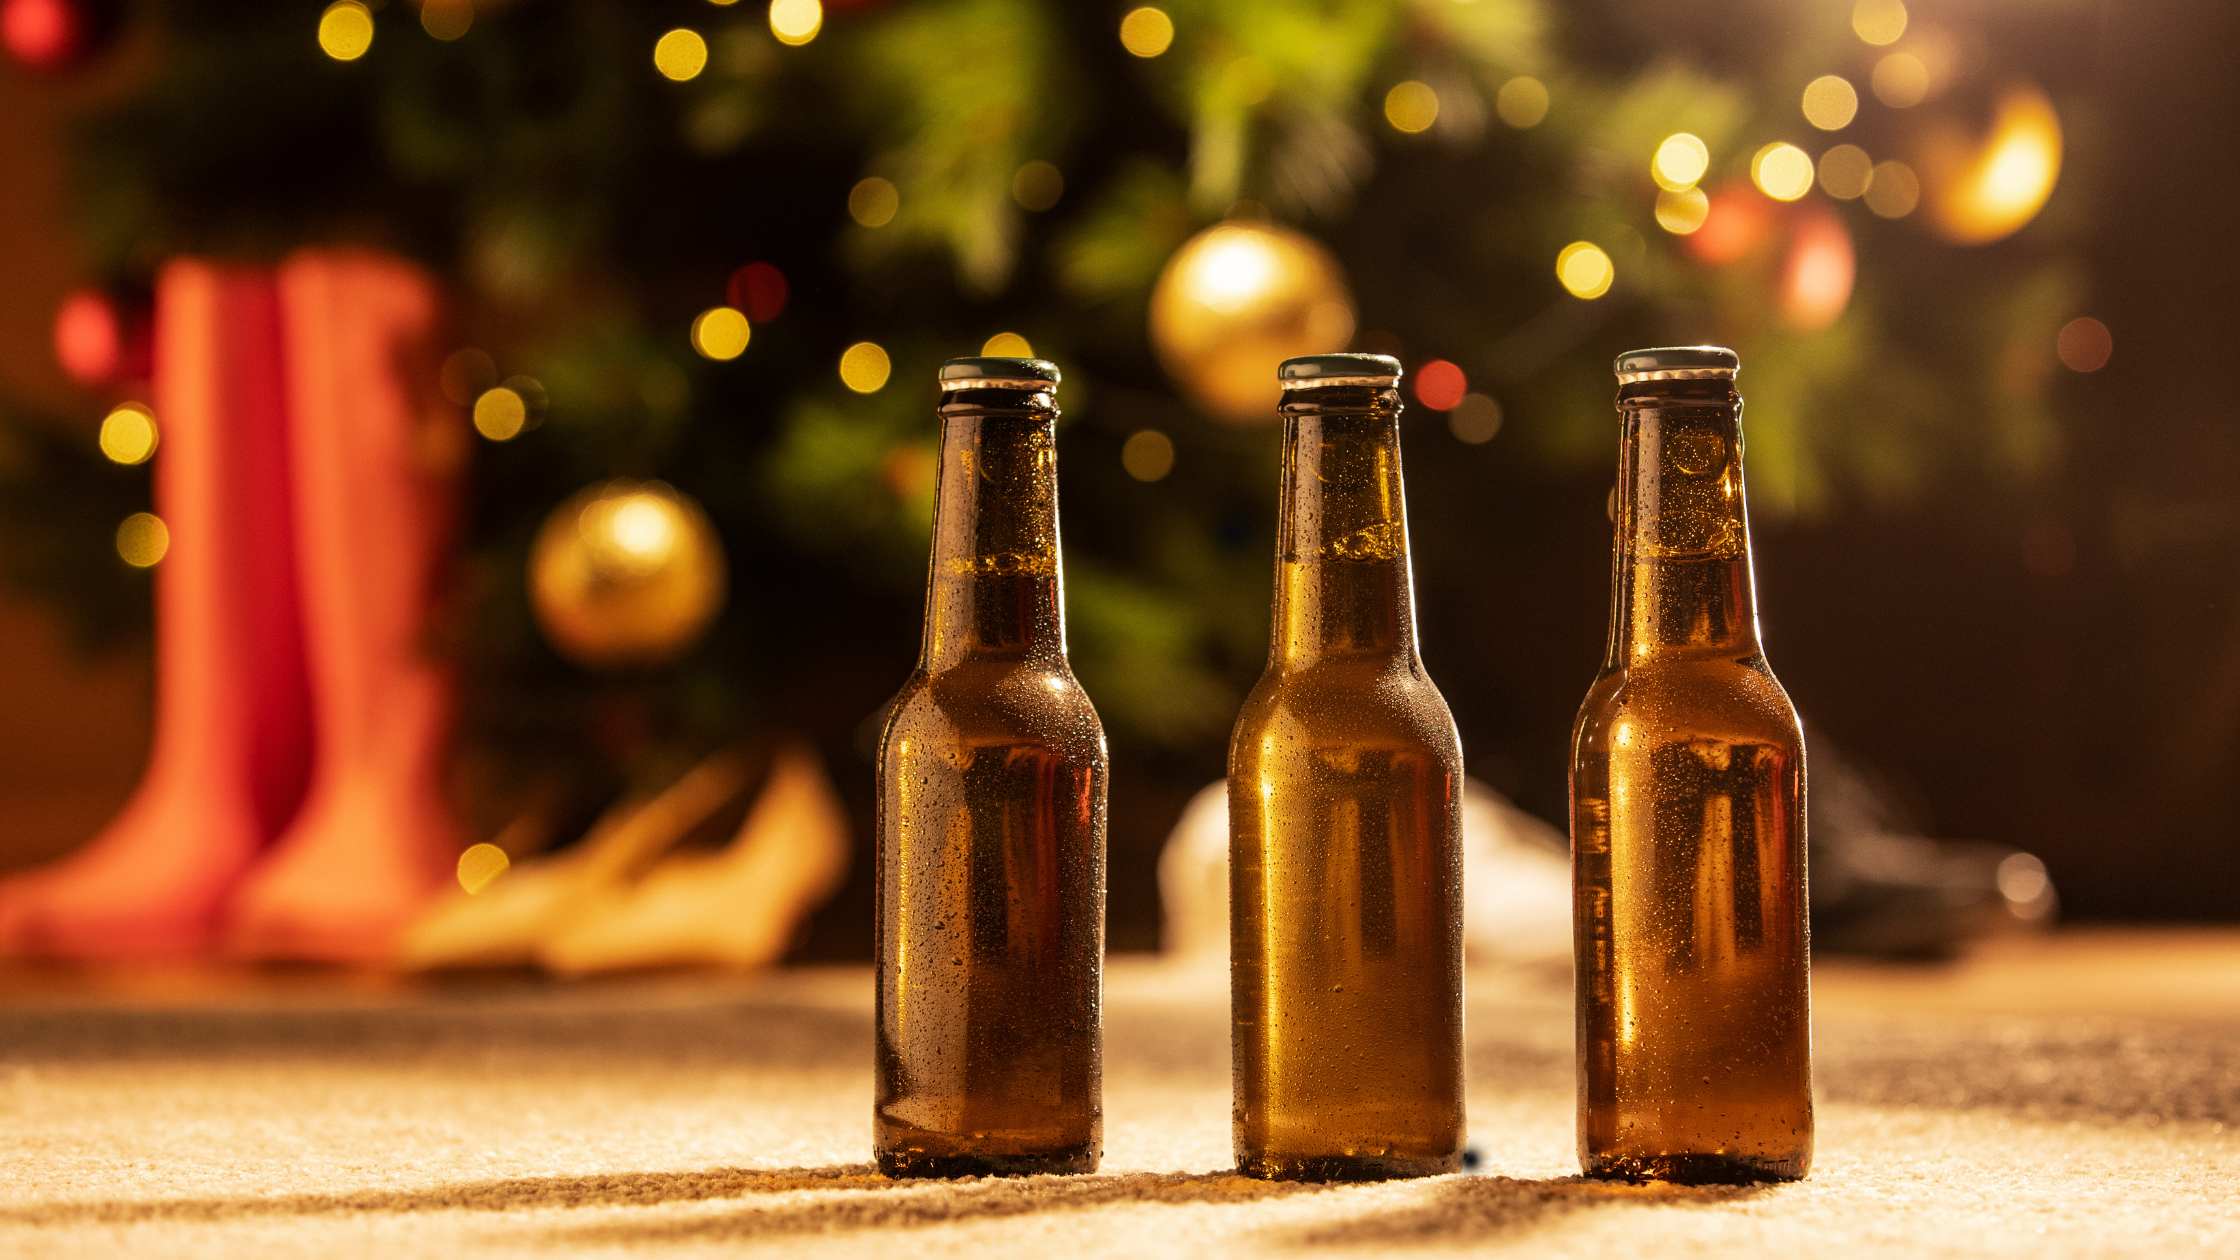 Réaliser sa propre bière de Noël grâce à Boboco et Mon Kit à Bière